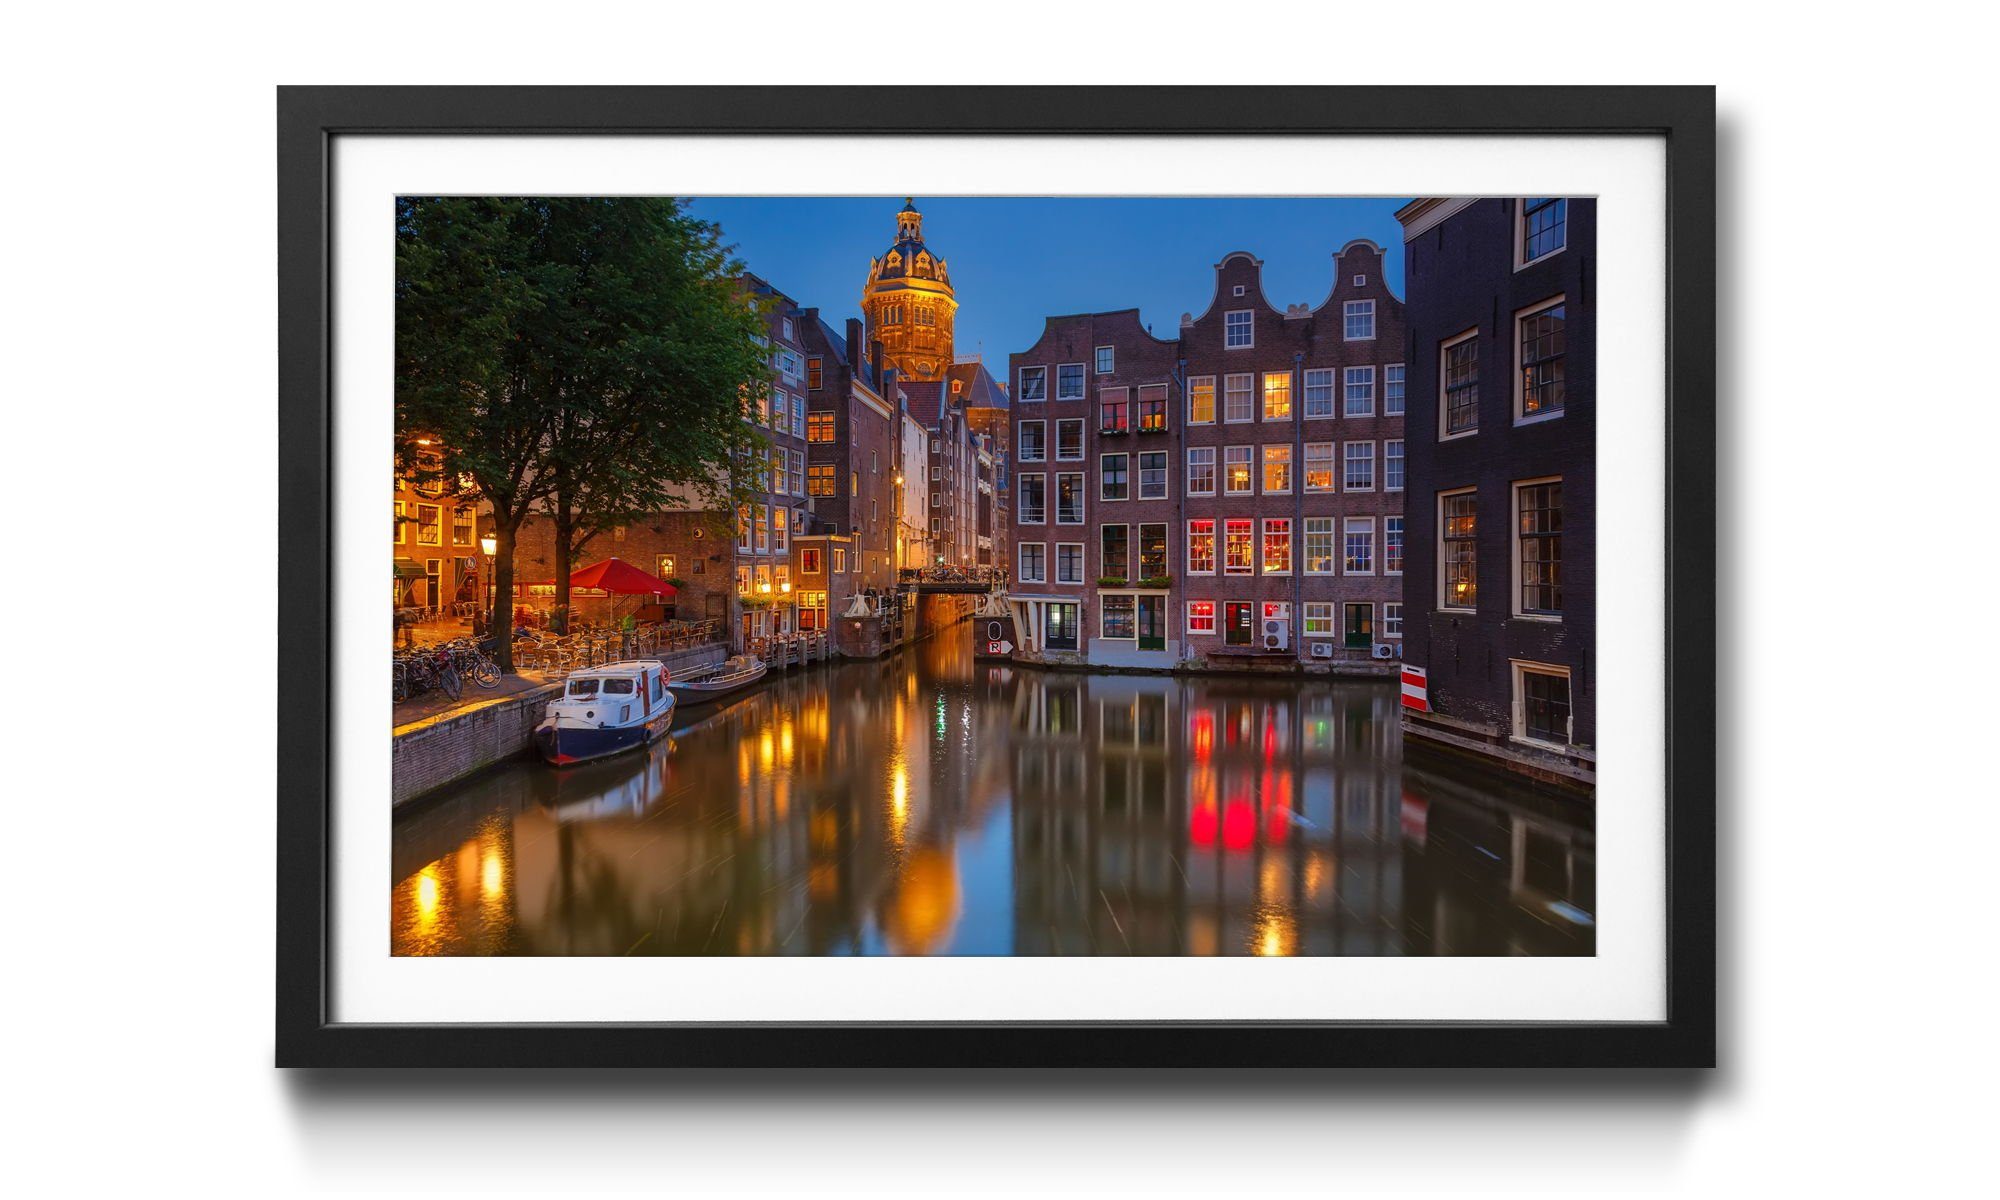 WandbilderXXL Bild mit Amsterdam, Amsterdam, in Größen 4 Wandbild, Rahmen in Canal erhältlich